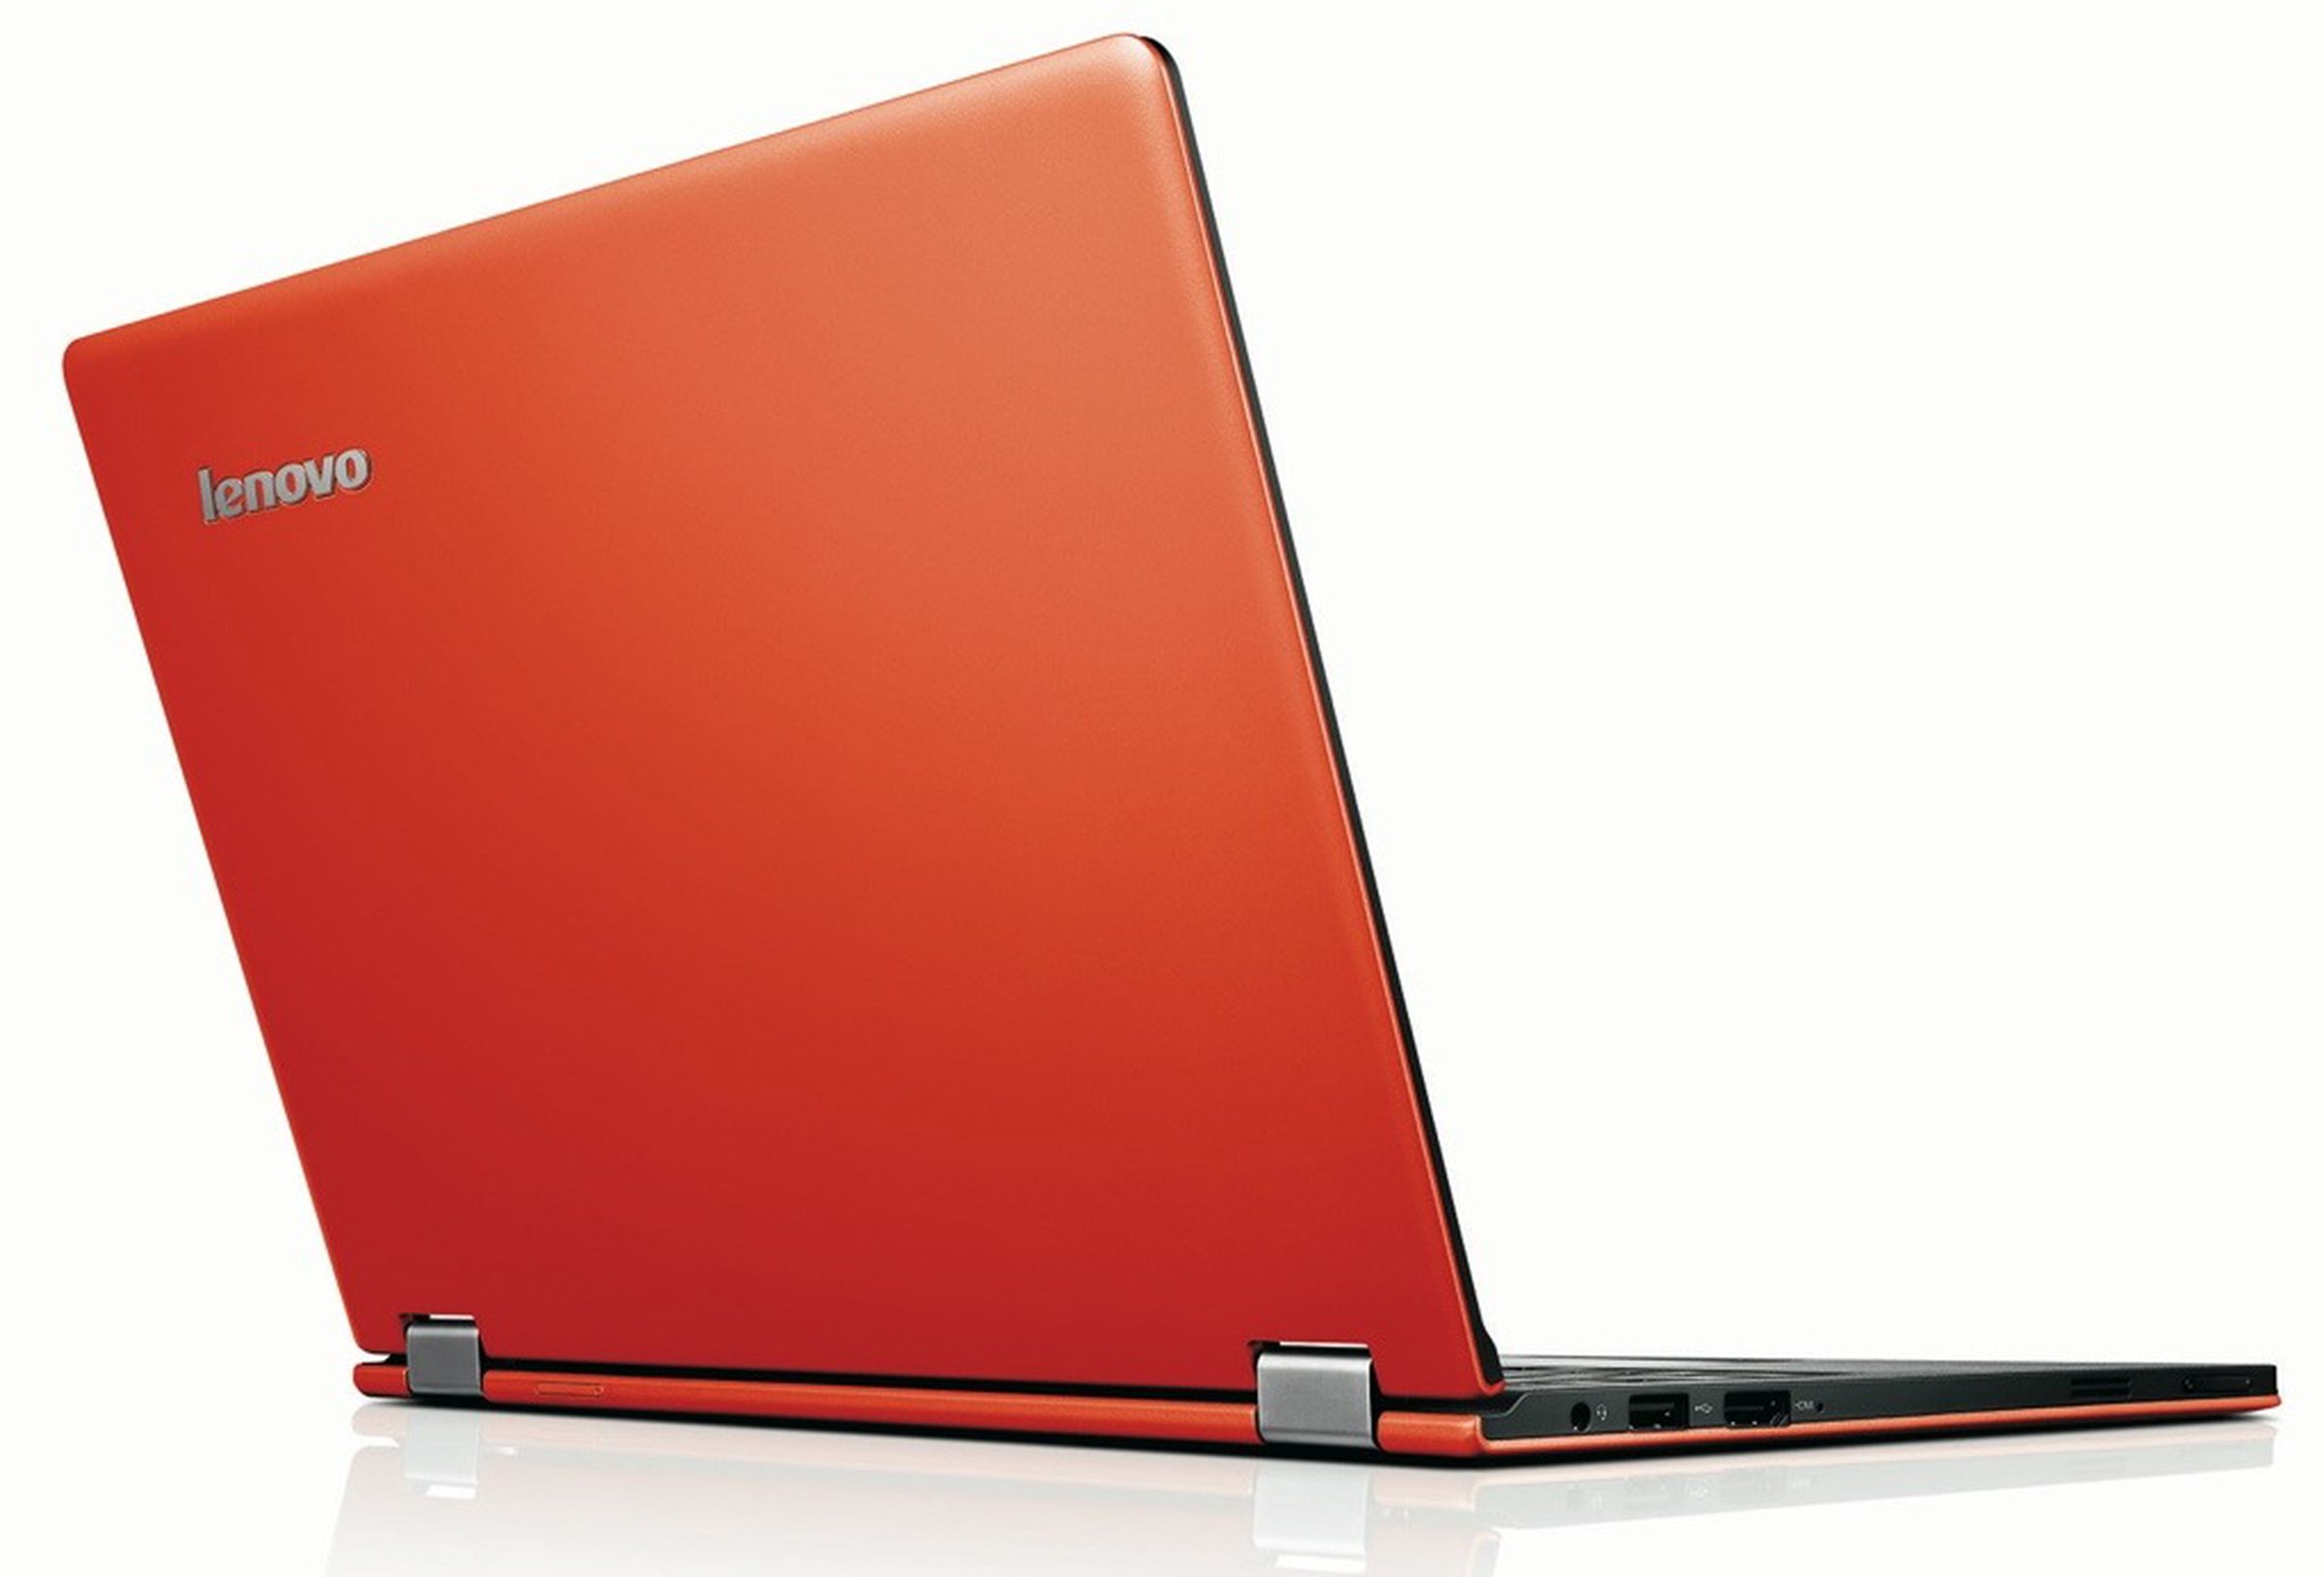 Lenovo IdeaPad Yoga 11S press pictures